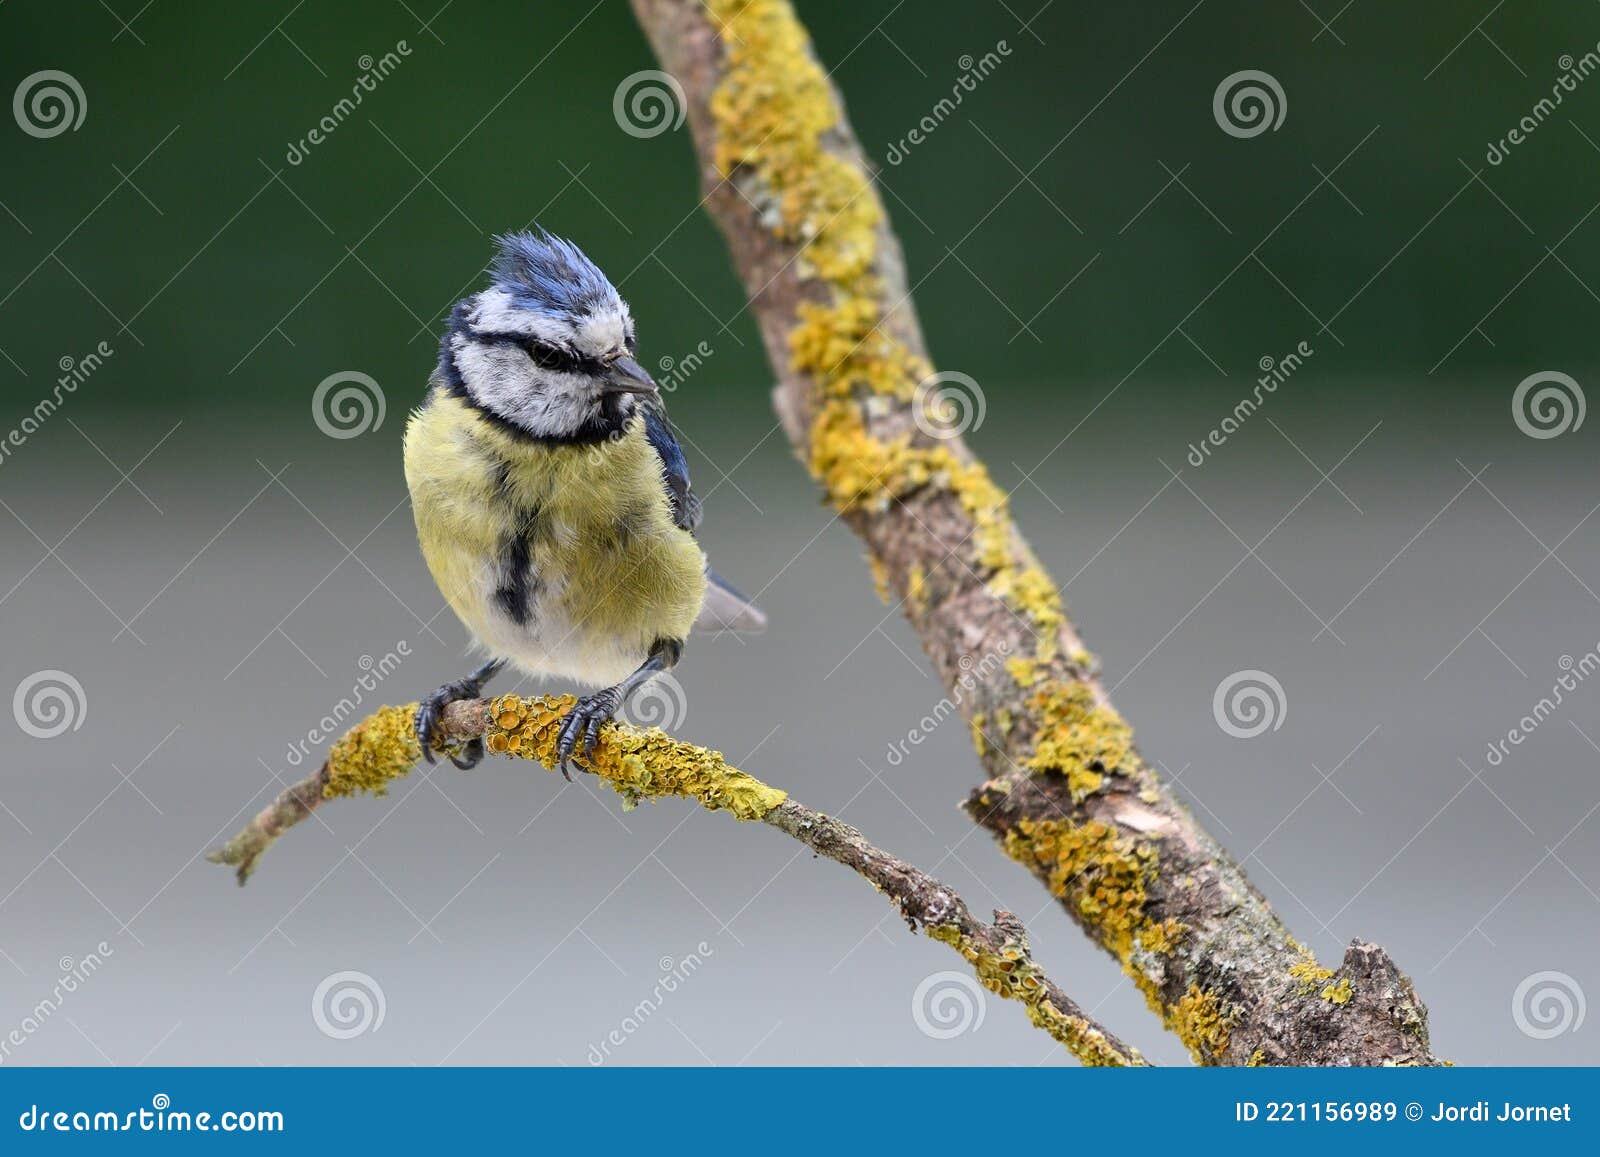 The blue tit (Cyanistes caeruleus) species of passerine bird in